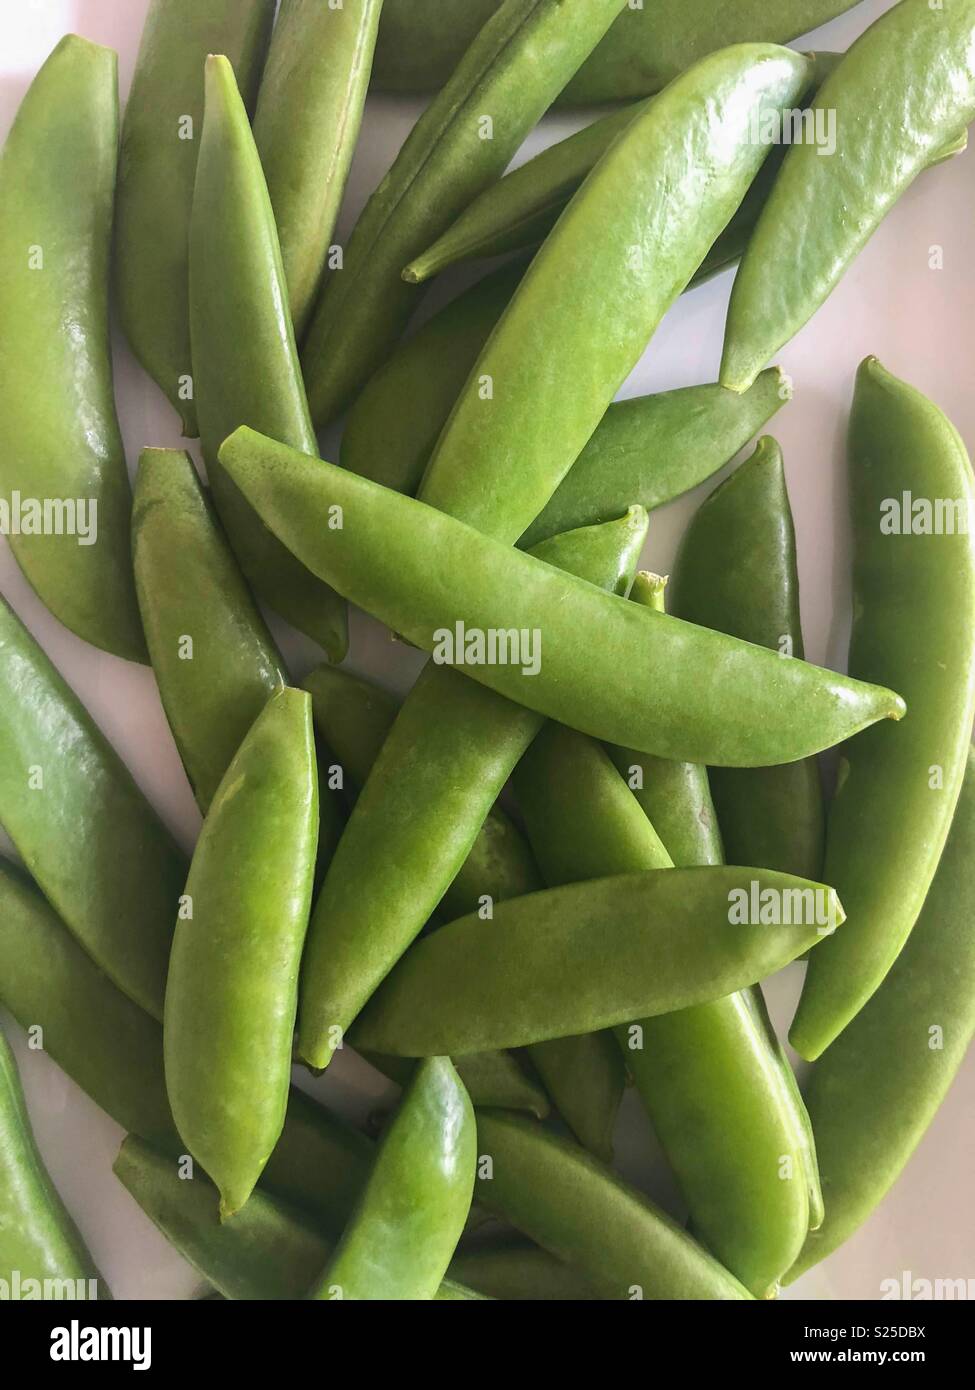 Snow peas Stock Photo